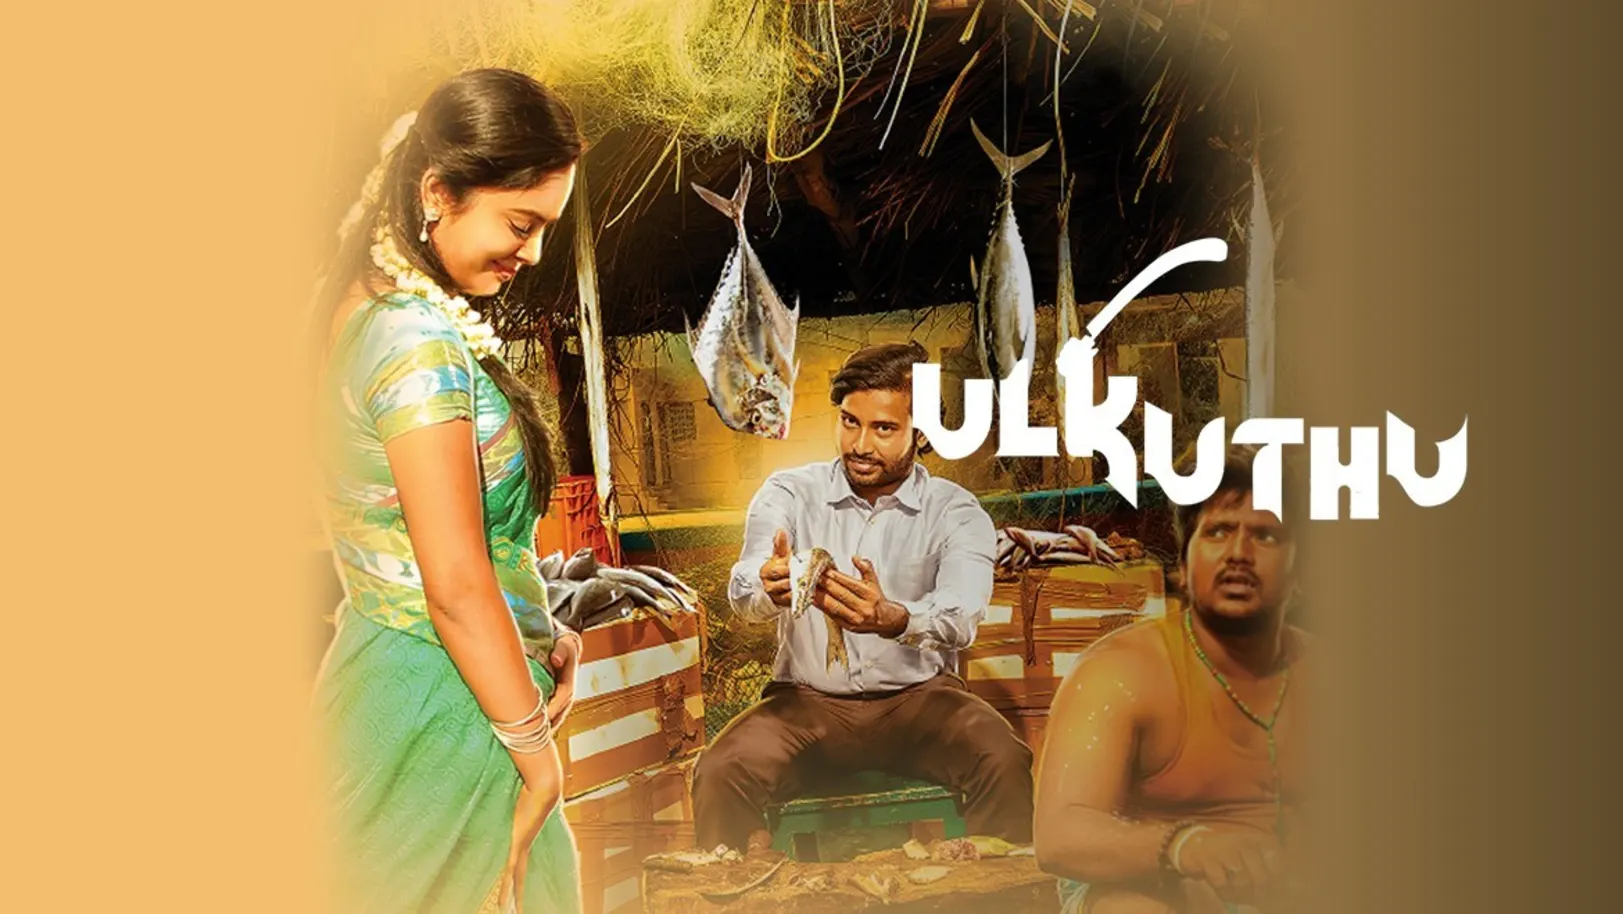 Ulkuthu Movie